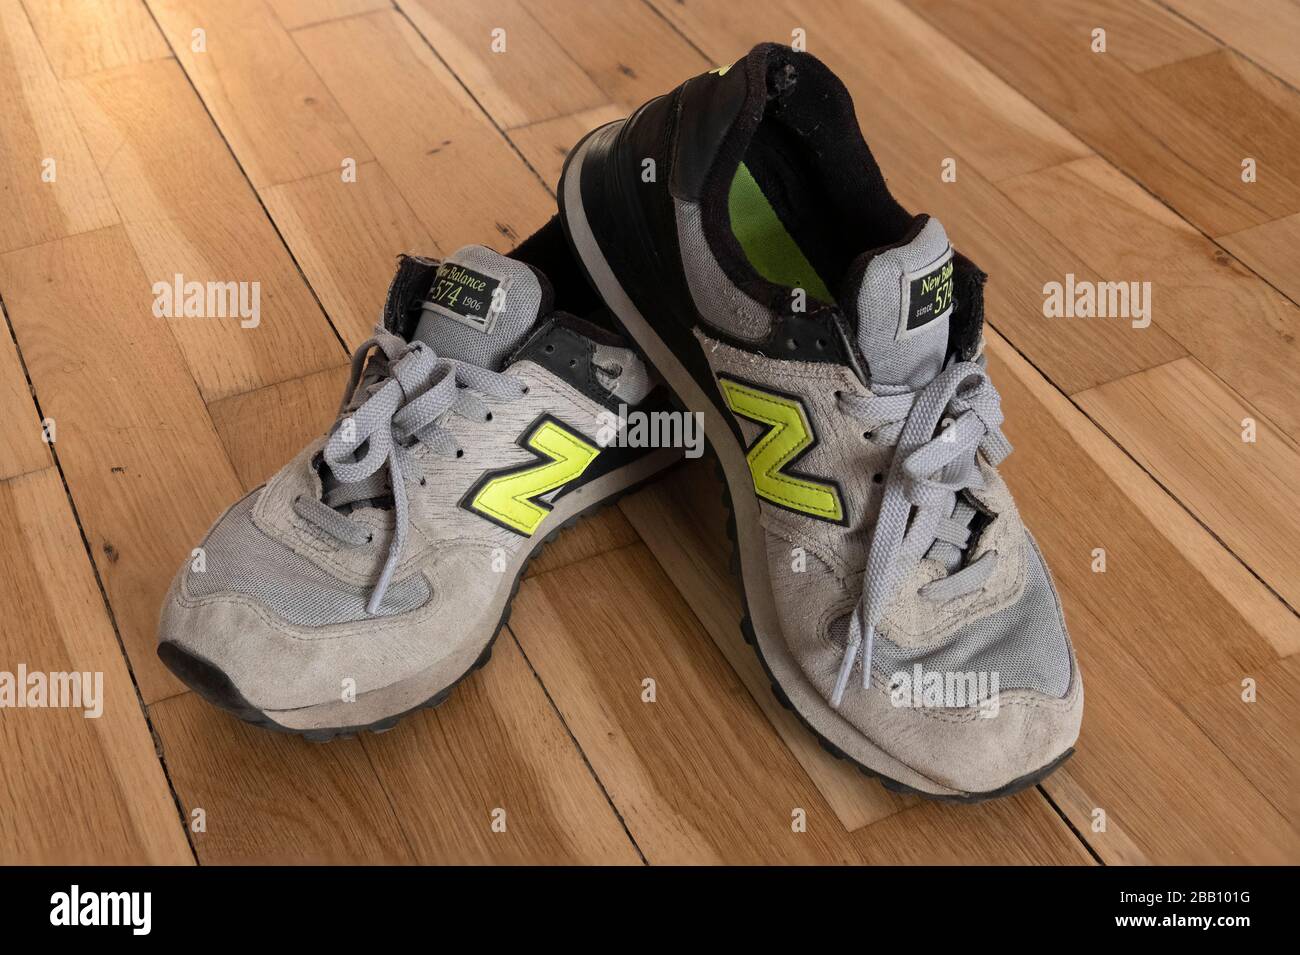 Vecchio paio di nuovo equilibrio 574 scarpe da training su pavimento in legno duro Foto Stock